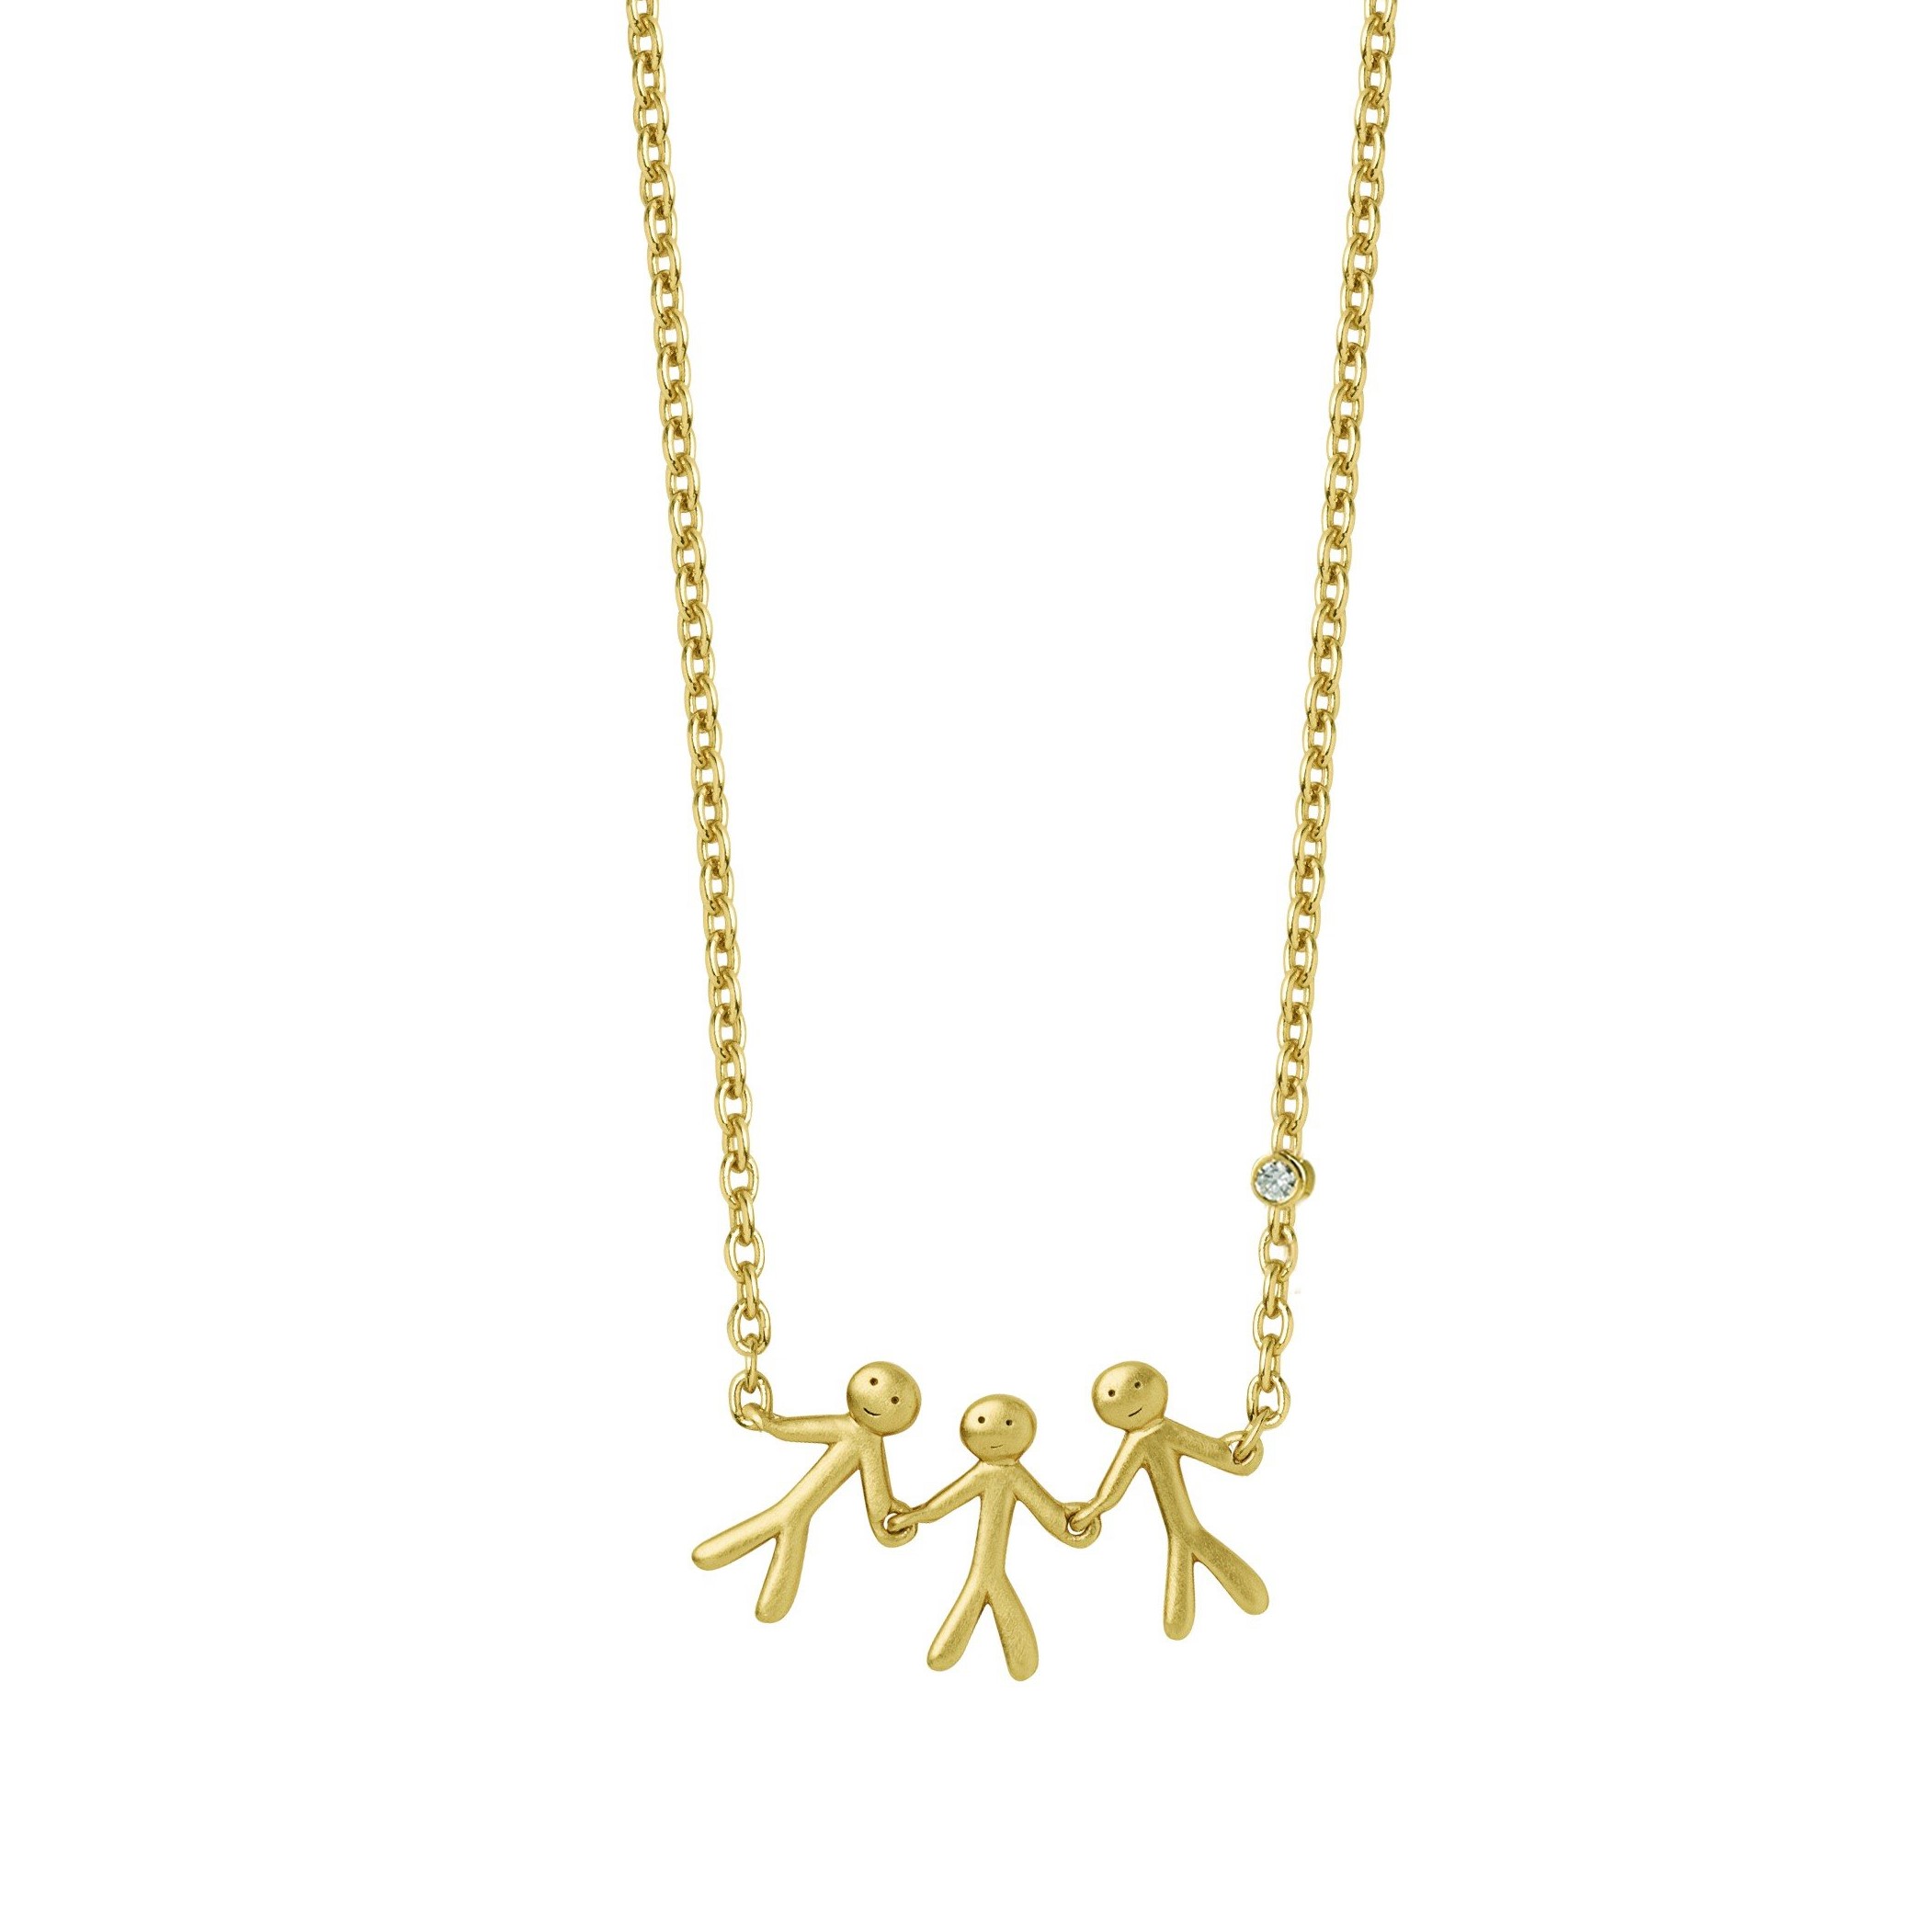 Together - Family halskæde - Guld - Ure-smykker din lokale urmager og guldsmed - køb online